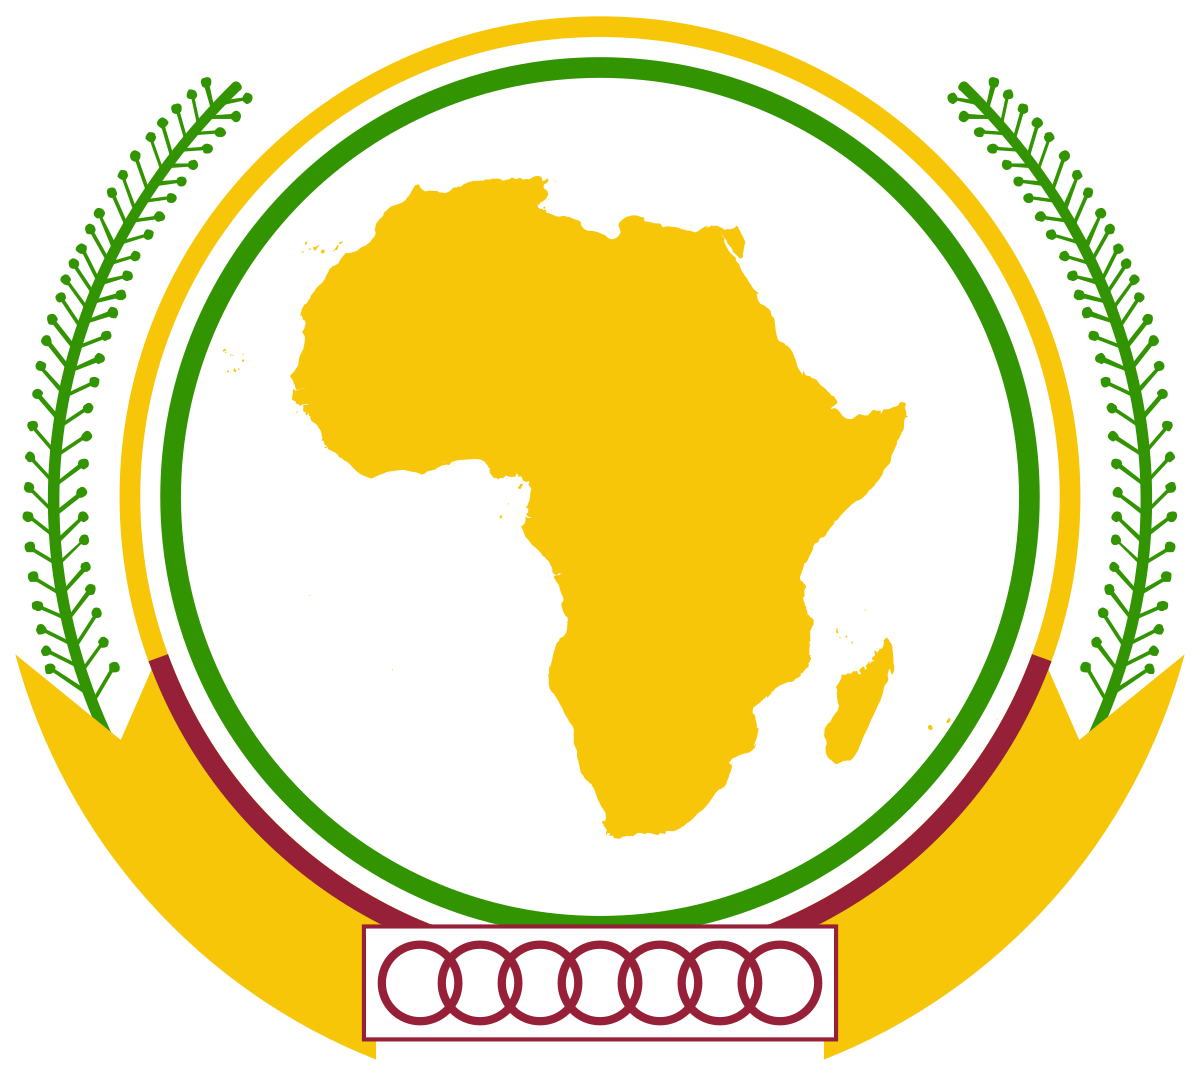 Emblème de l'Union africaine — Wikipédia